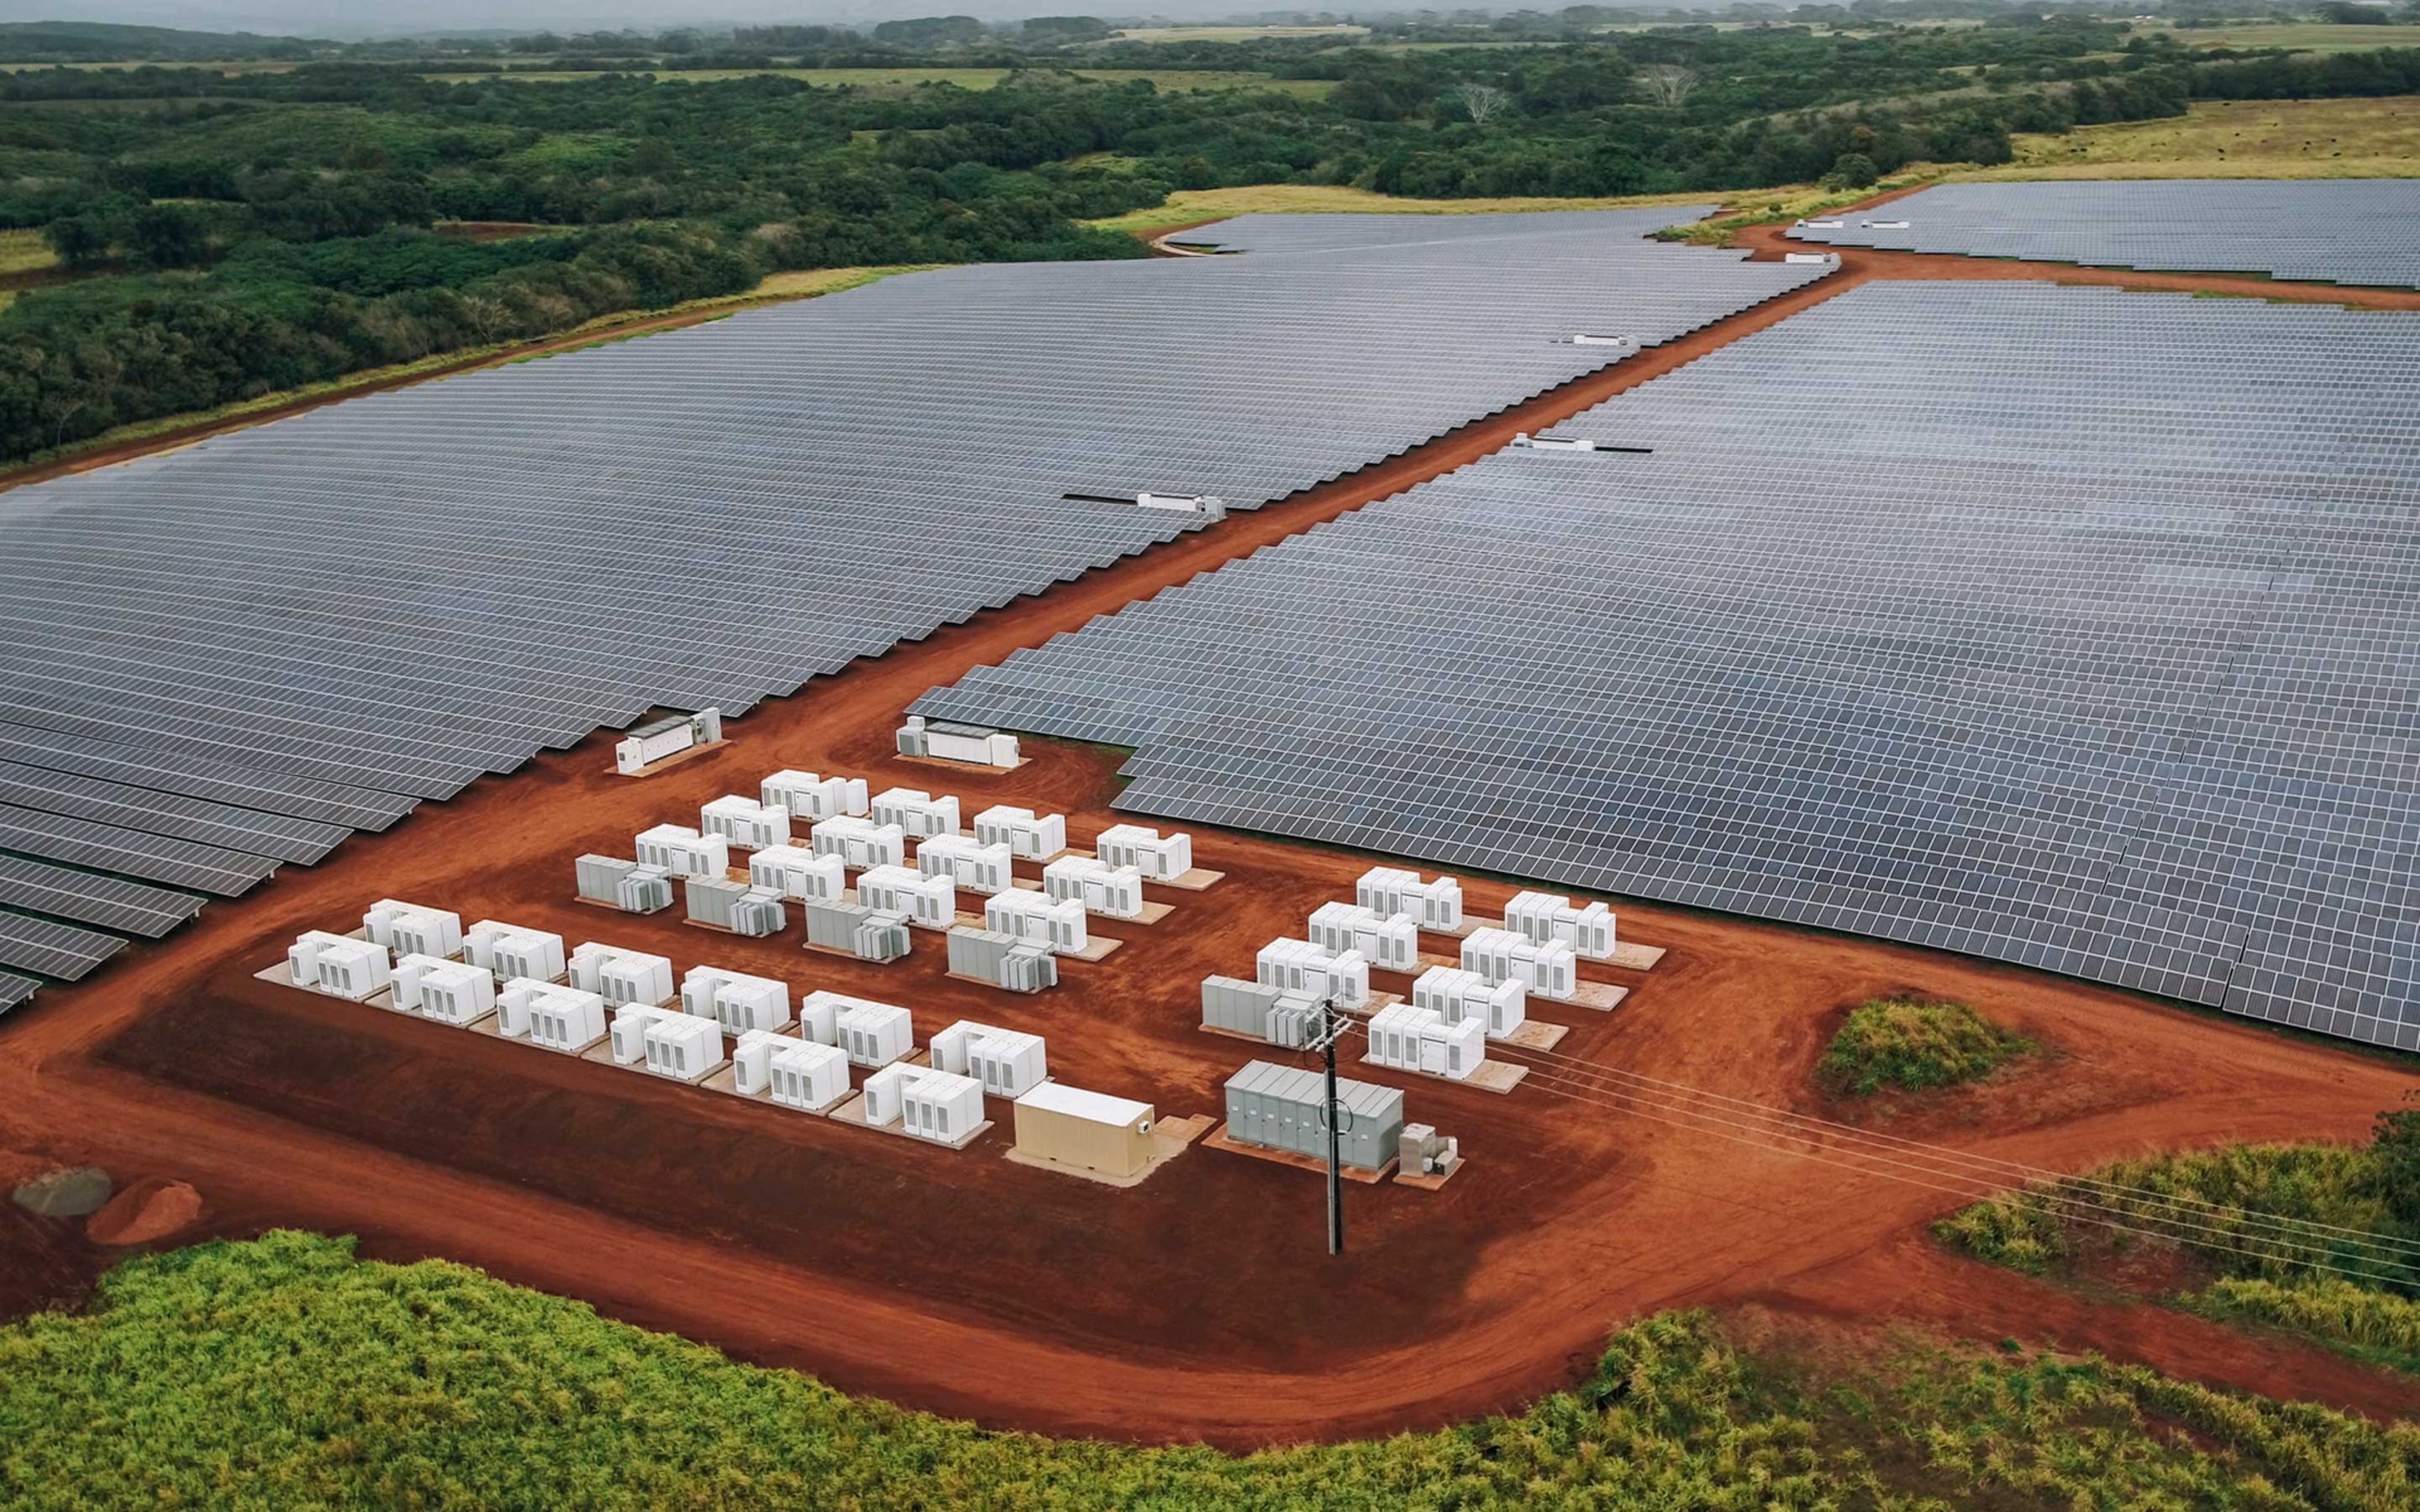 夏威夷考艾岛上的太阳能电池板和 Megapack